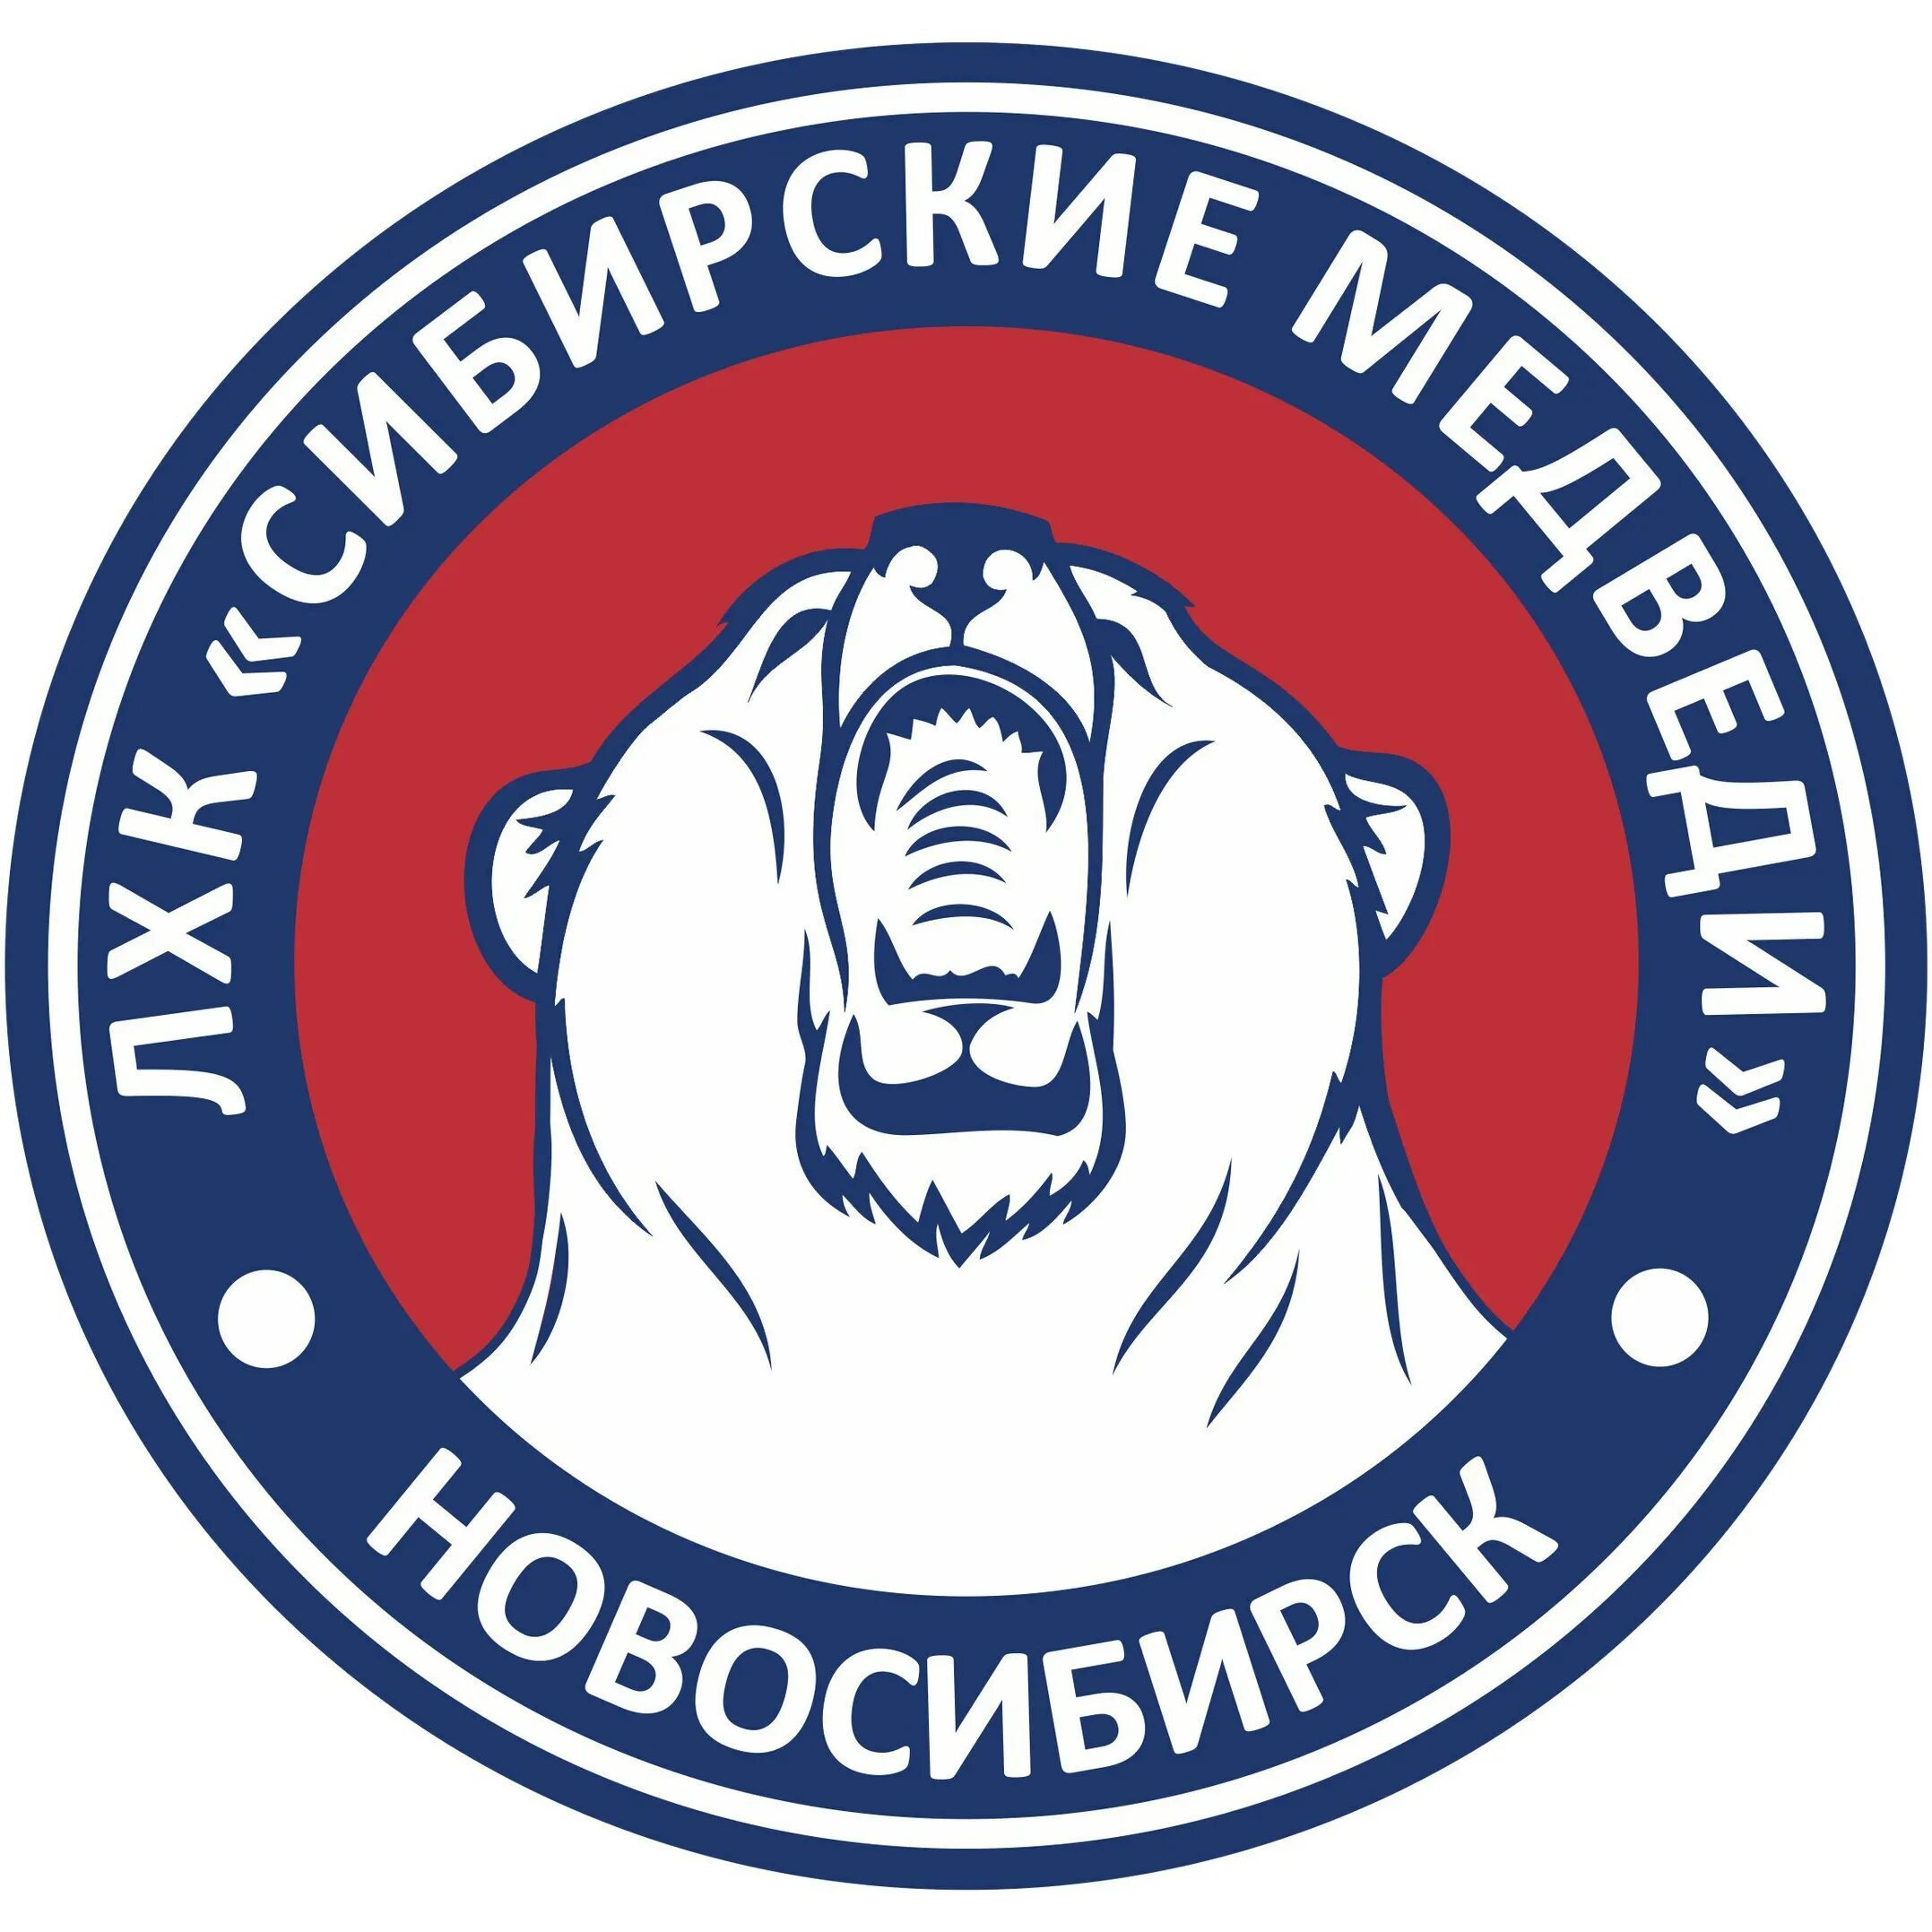 Сиб медведь. Сибирский медведь. Сибирский медведь логотип. Сибирский медведь клуб. Сибирские медведи хк.